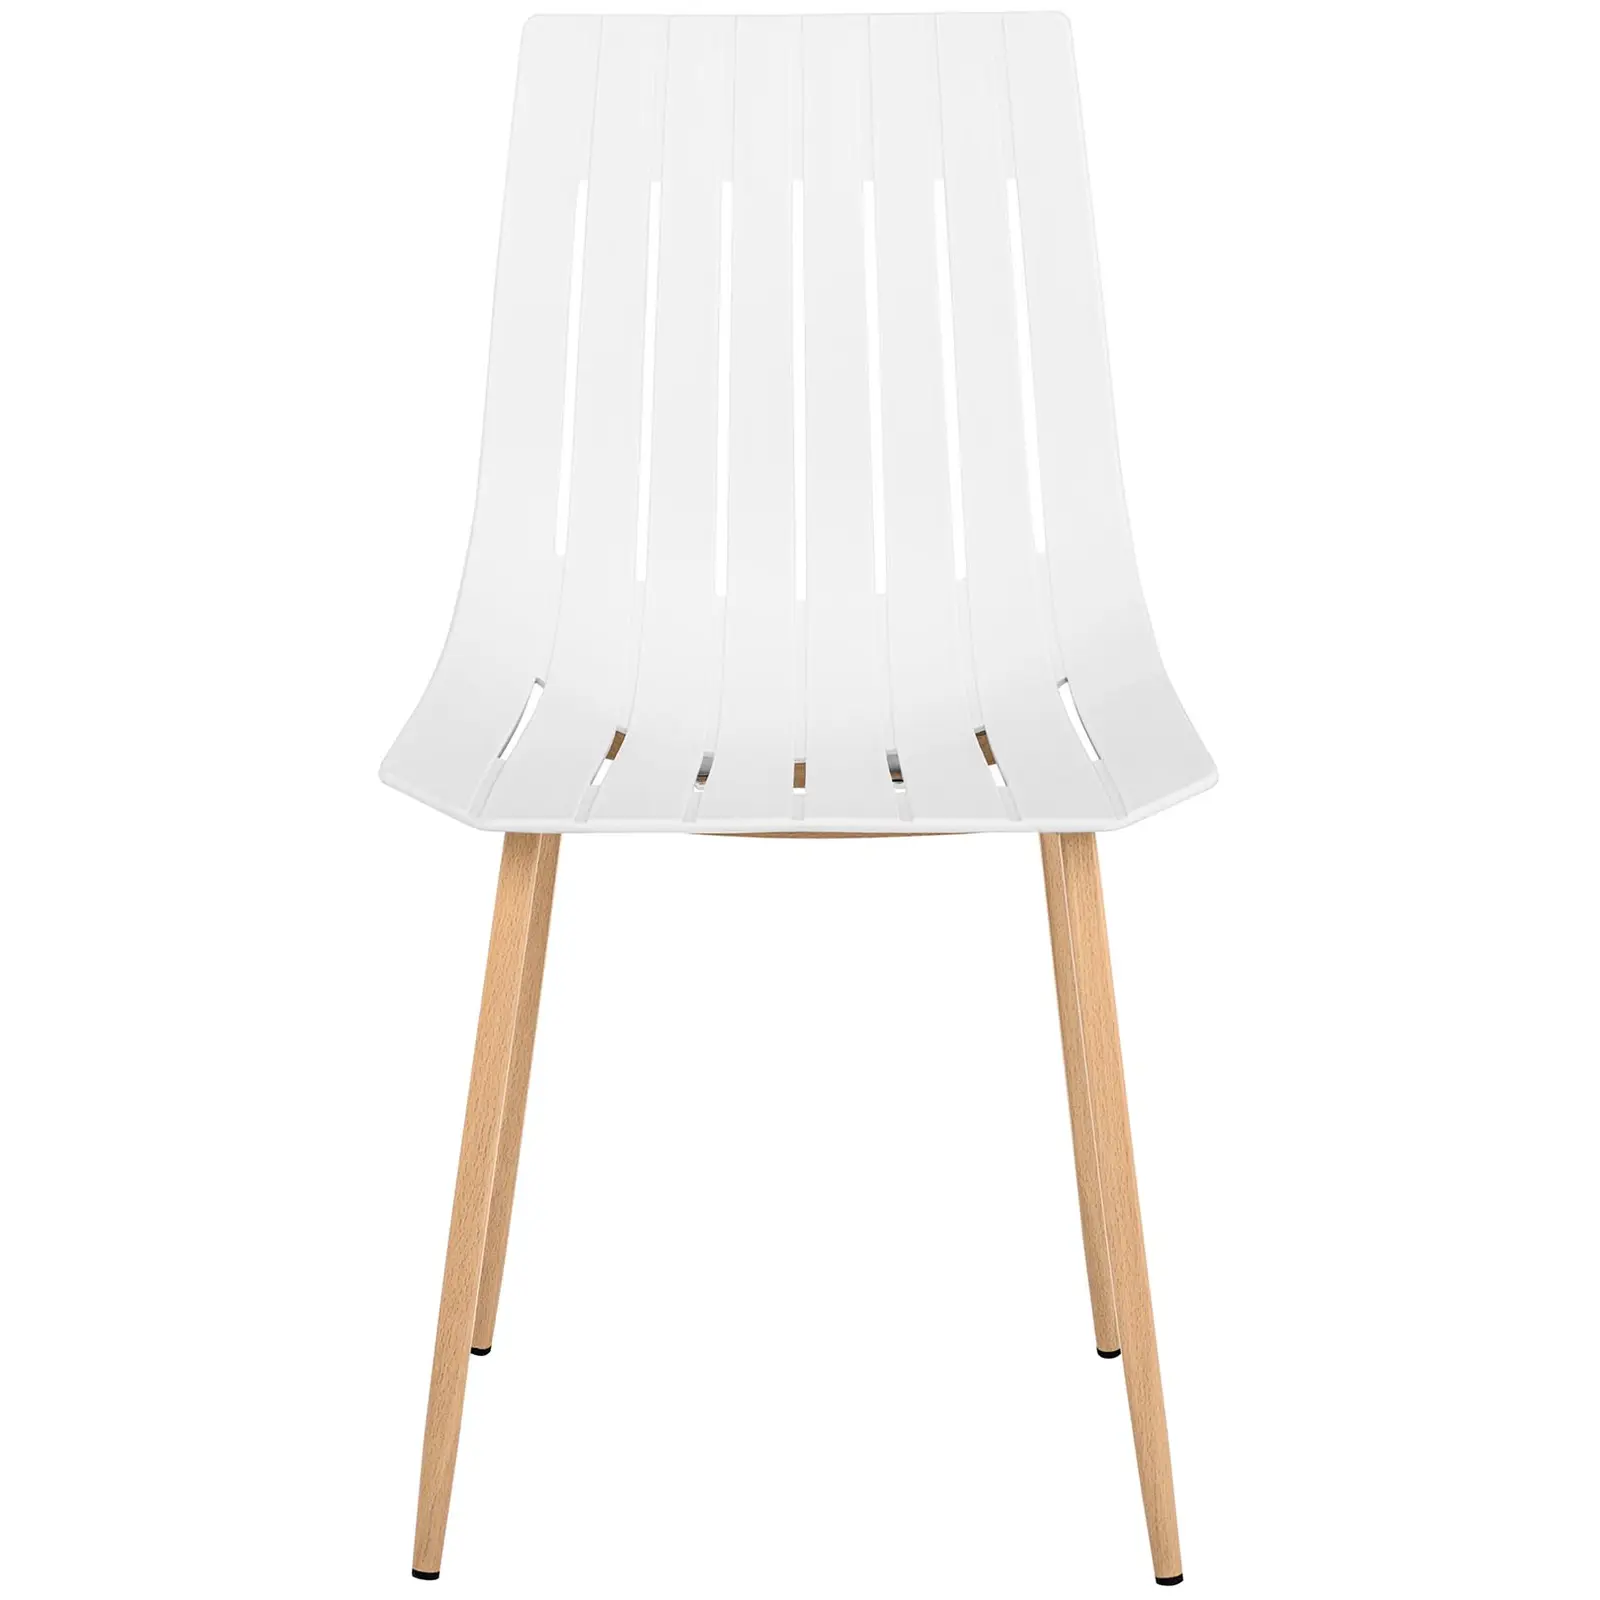 Chaise - Lot de 2 - 150 kg max. - Surface d'assise de 50 x 47 cm - Coloris blanc